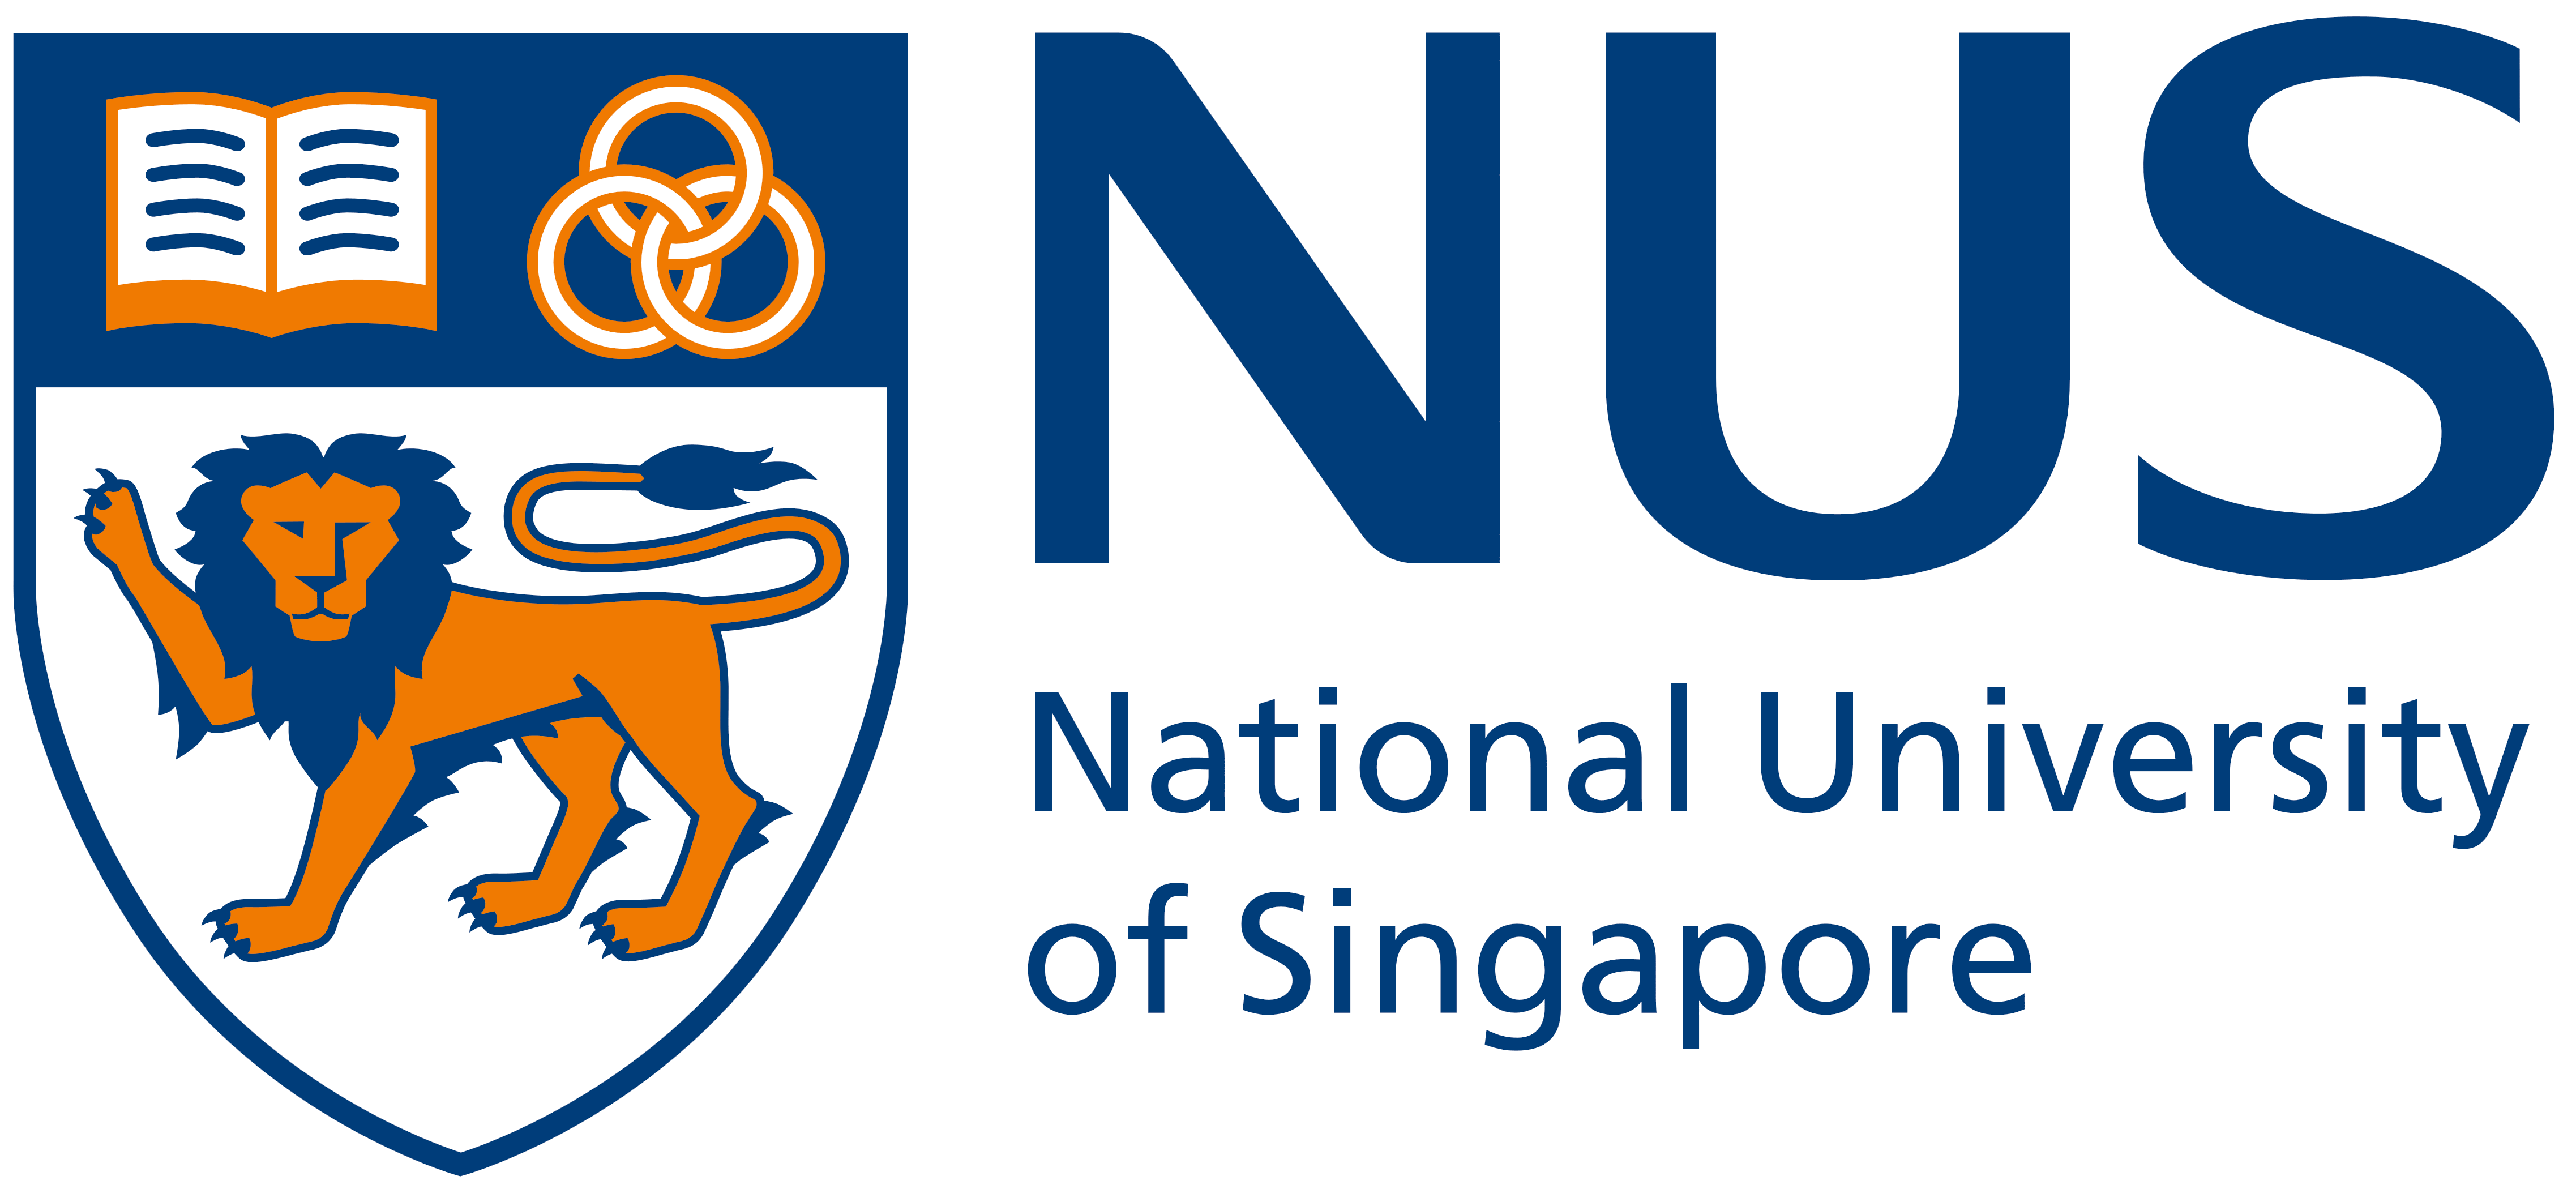 NUS Logo - National University Of Singapore (NUS) – Logos Download